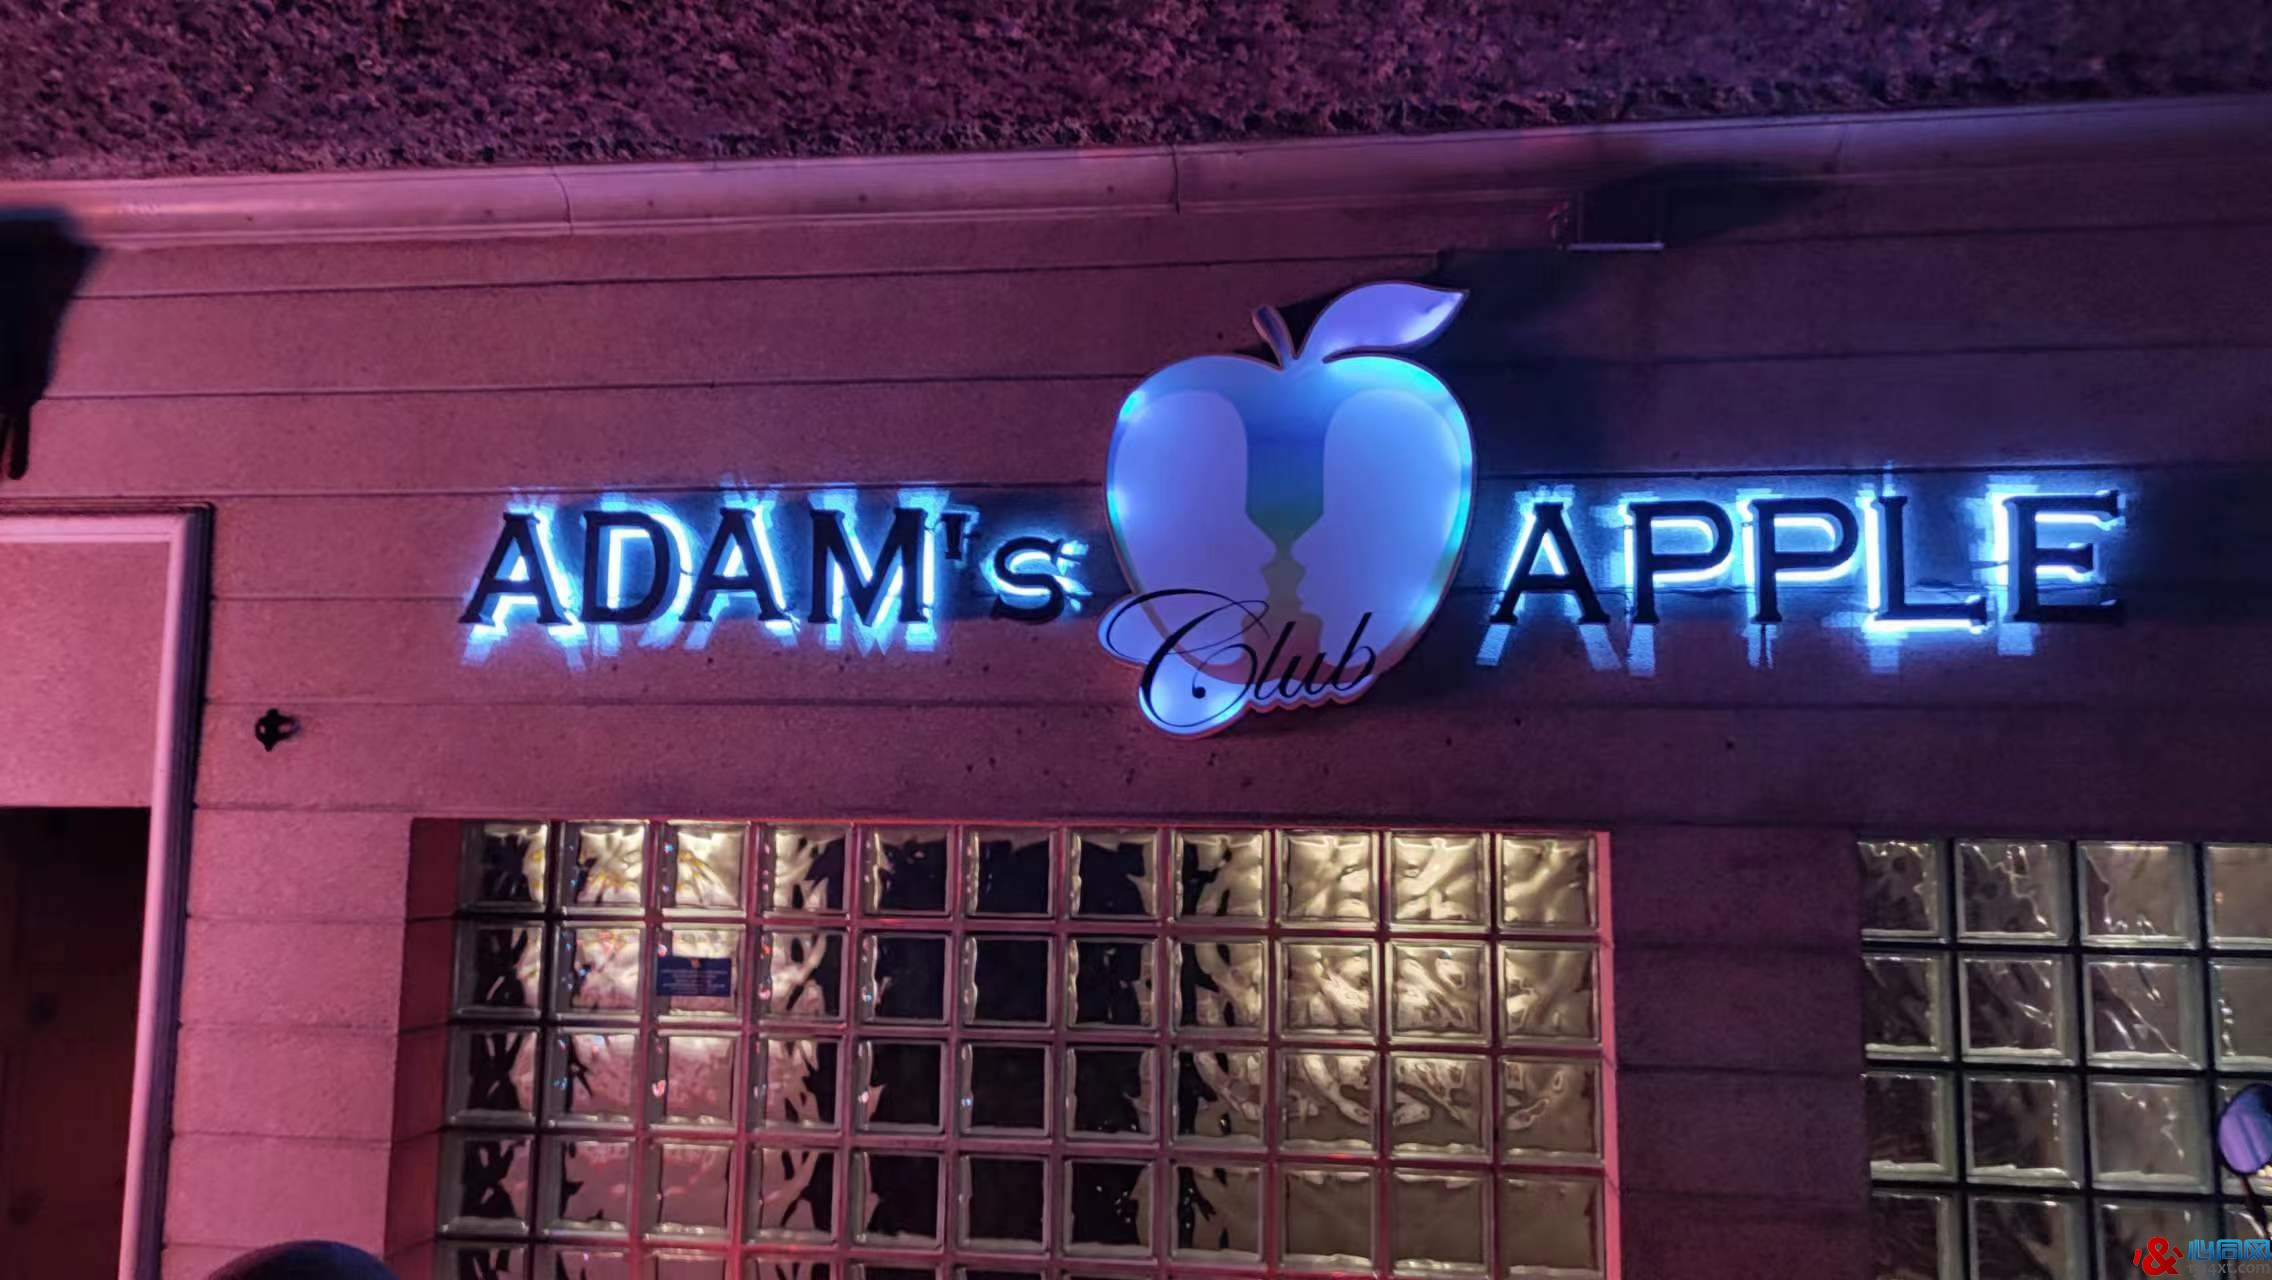 Adam's Apple Club